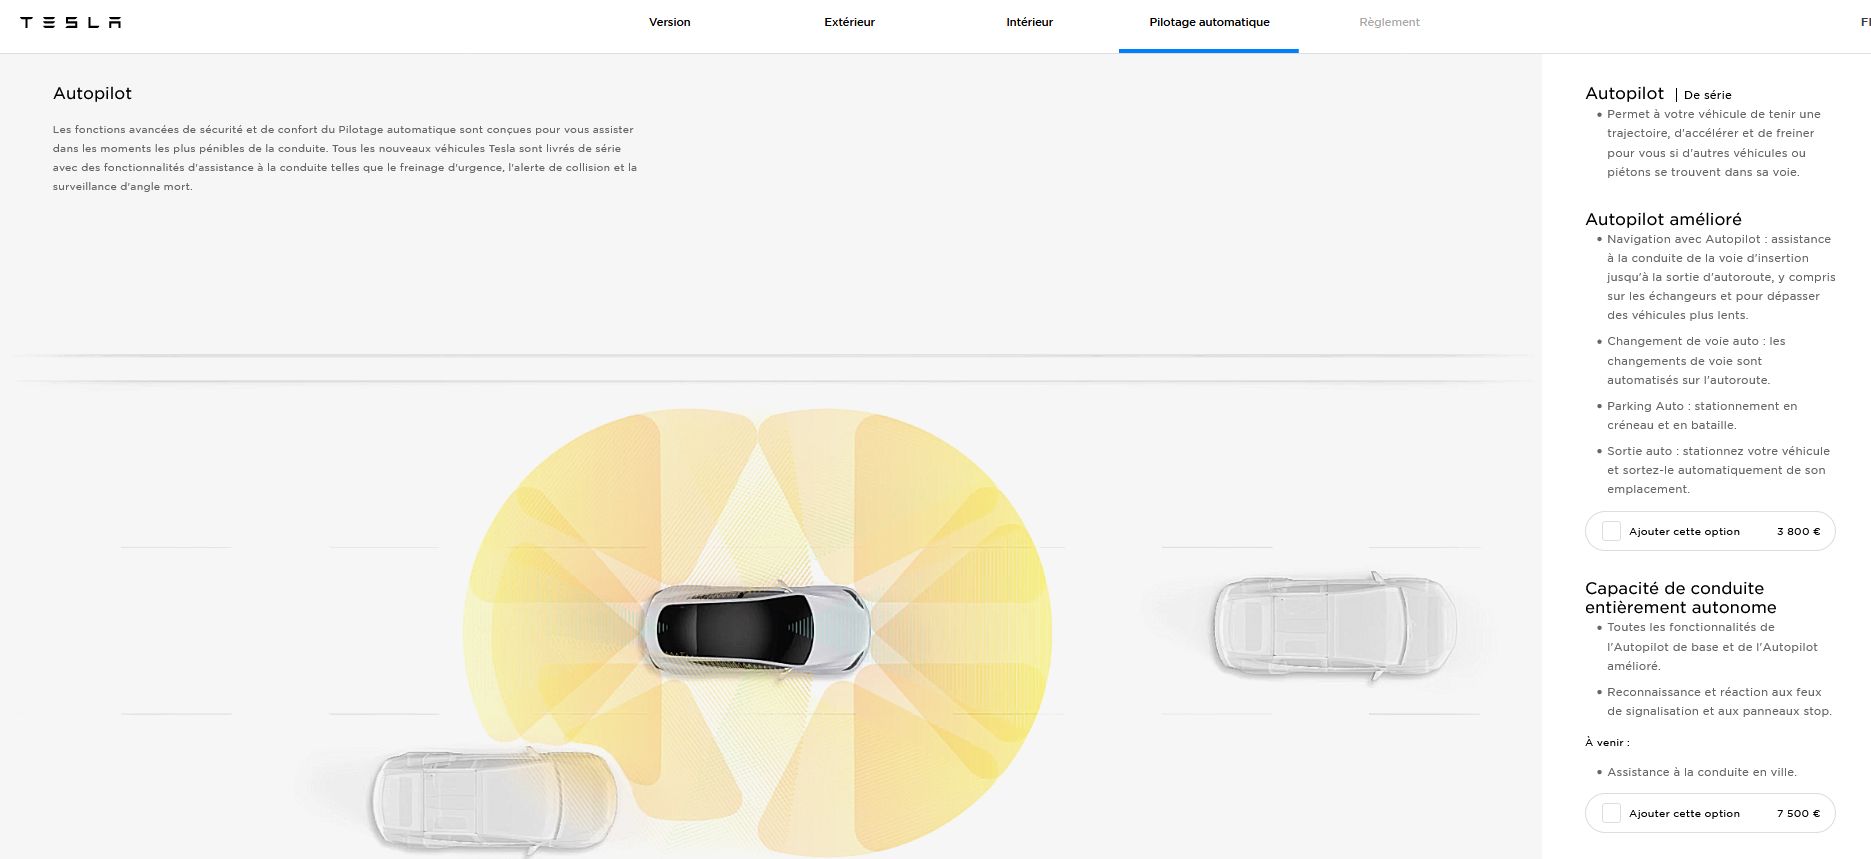 Capture site Tesla Autopilot mars 2021